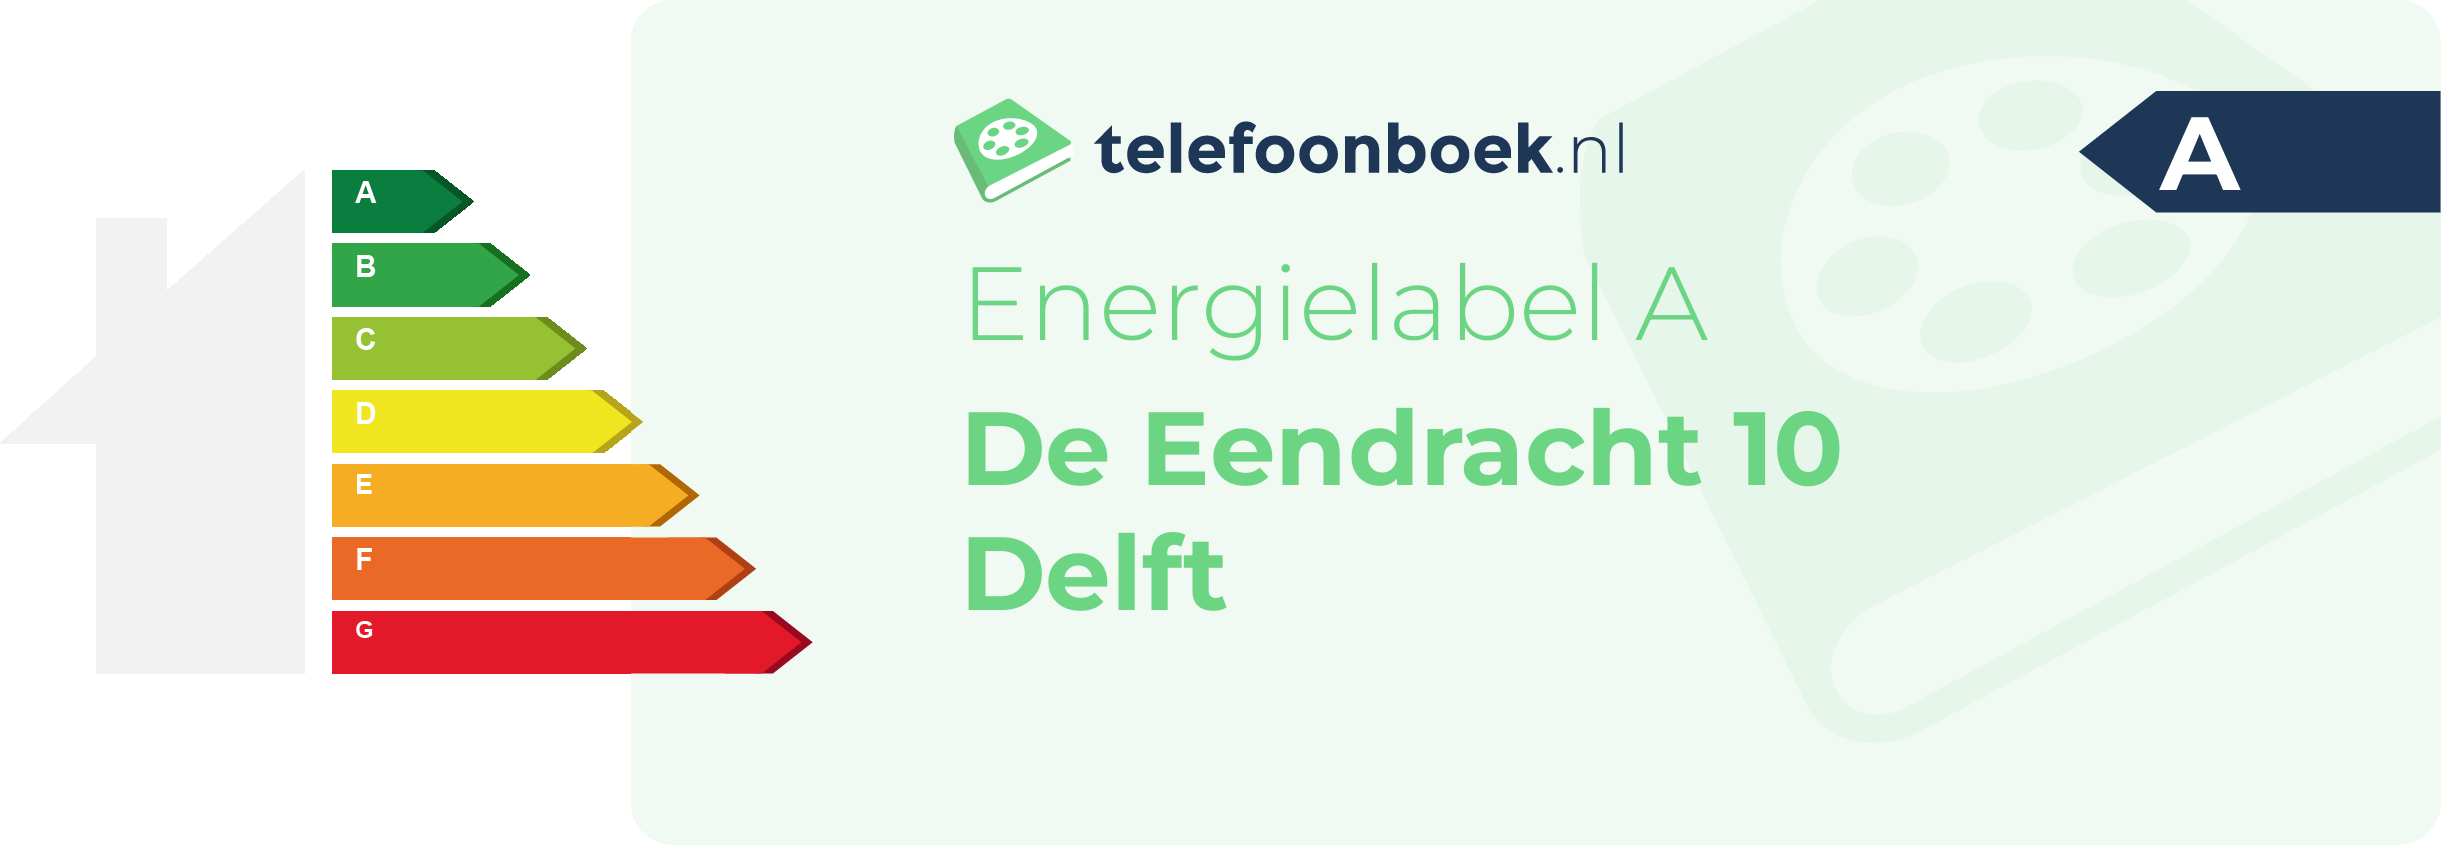 Energielabel De Eendracht 10 Delft